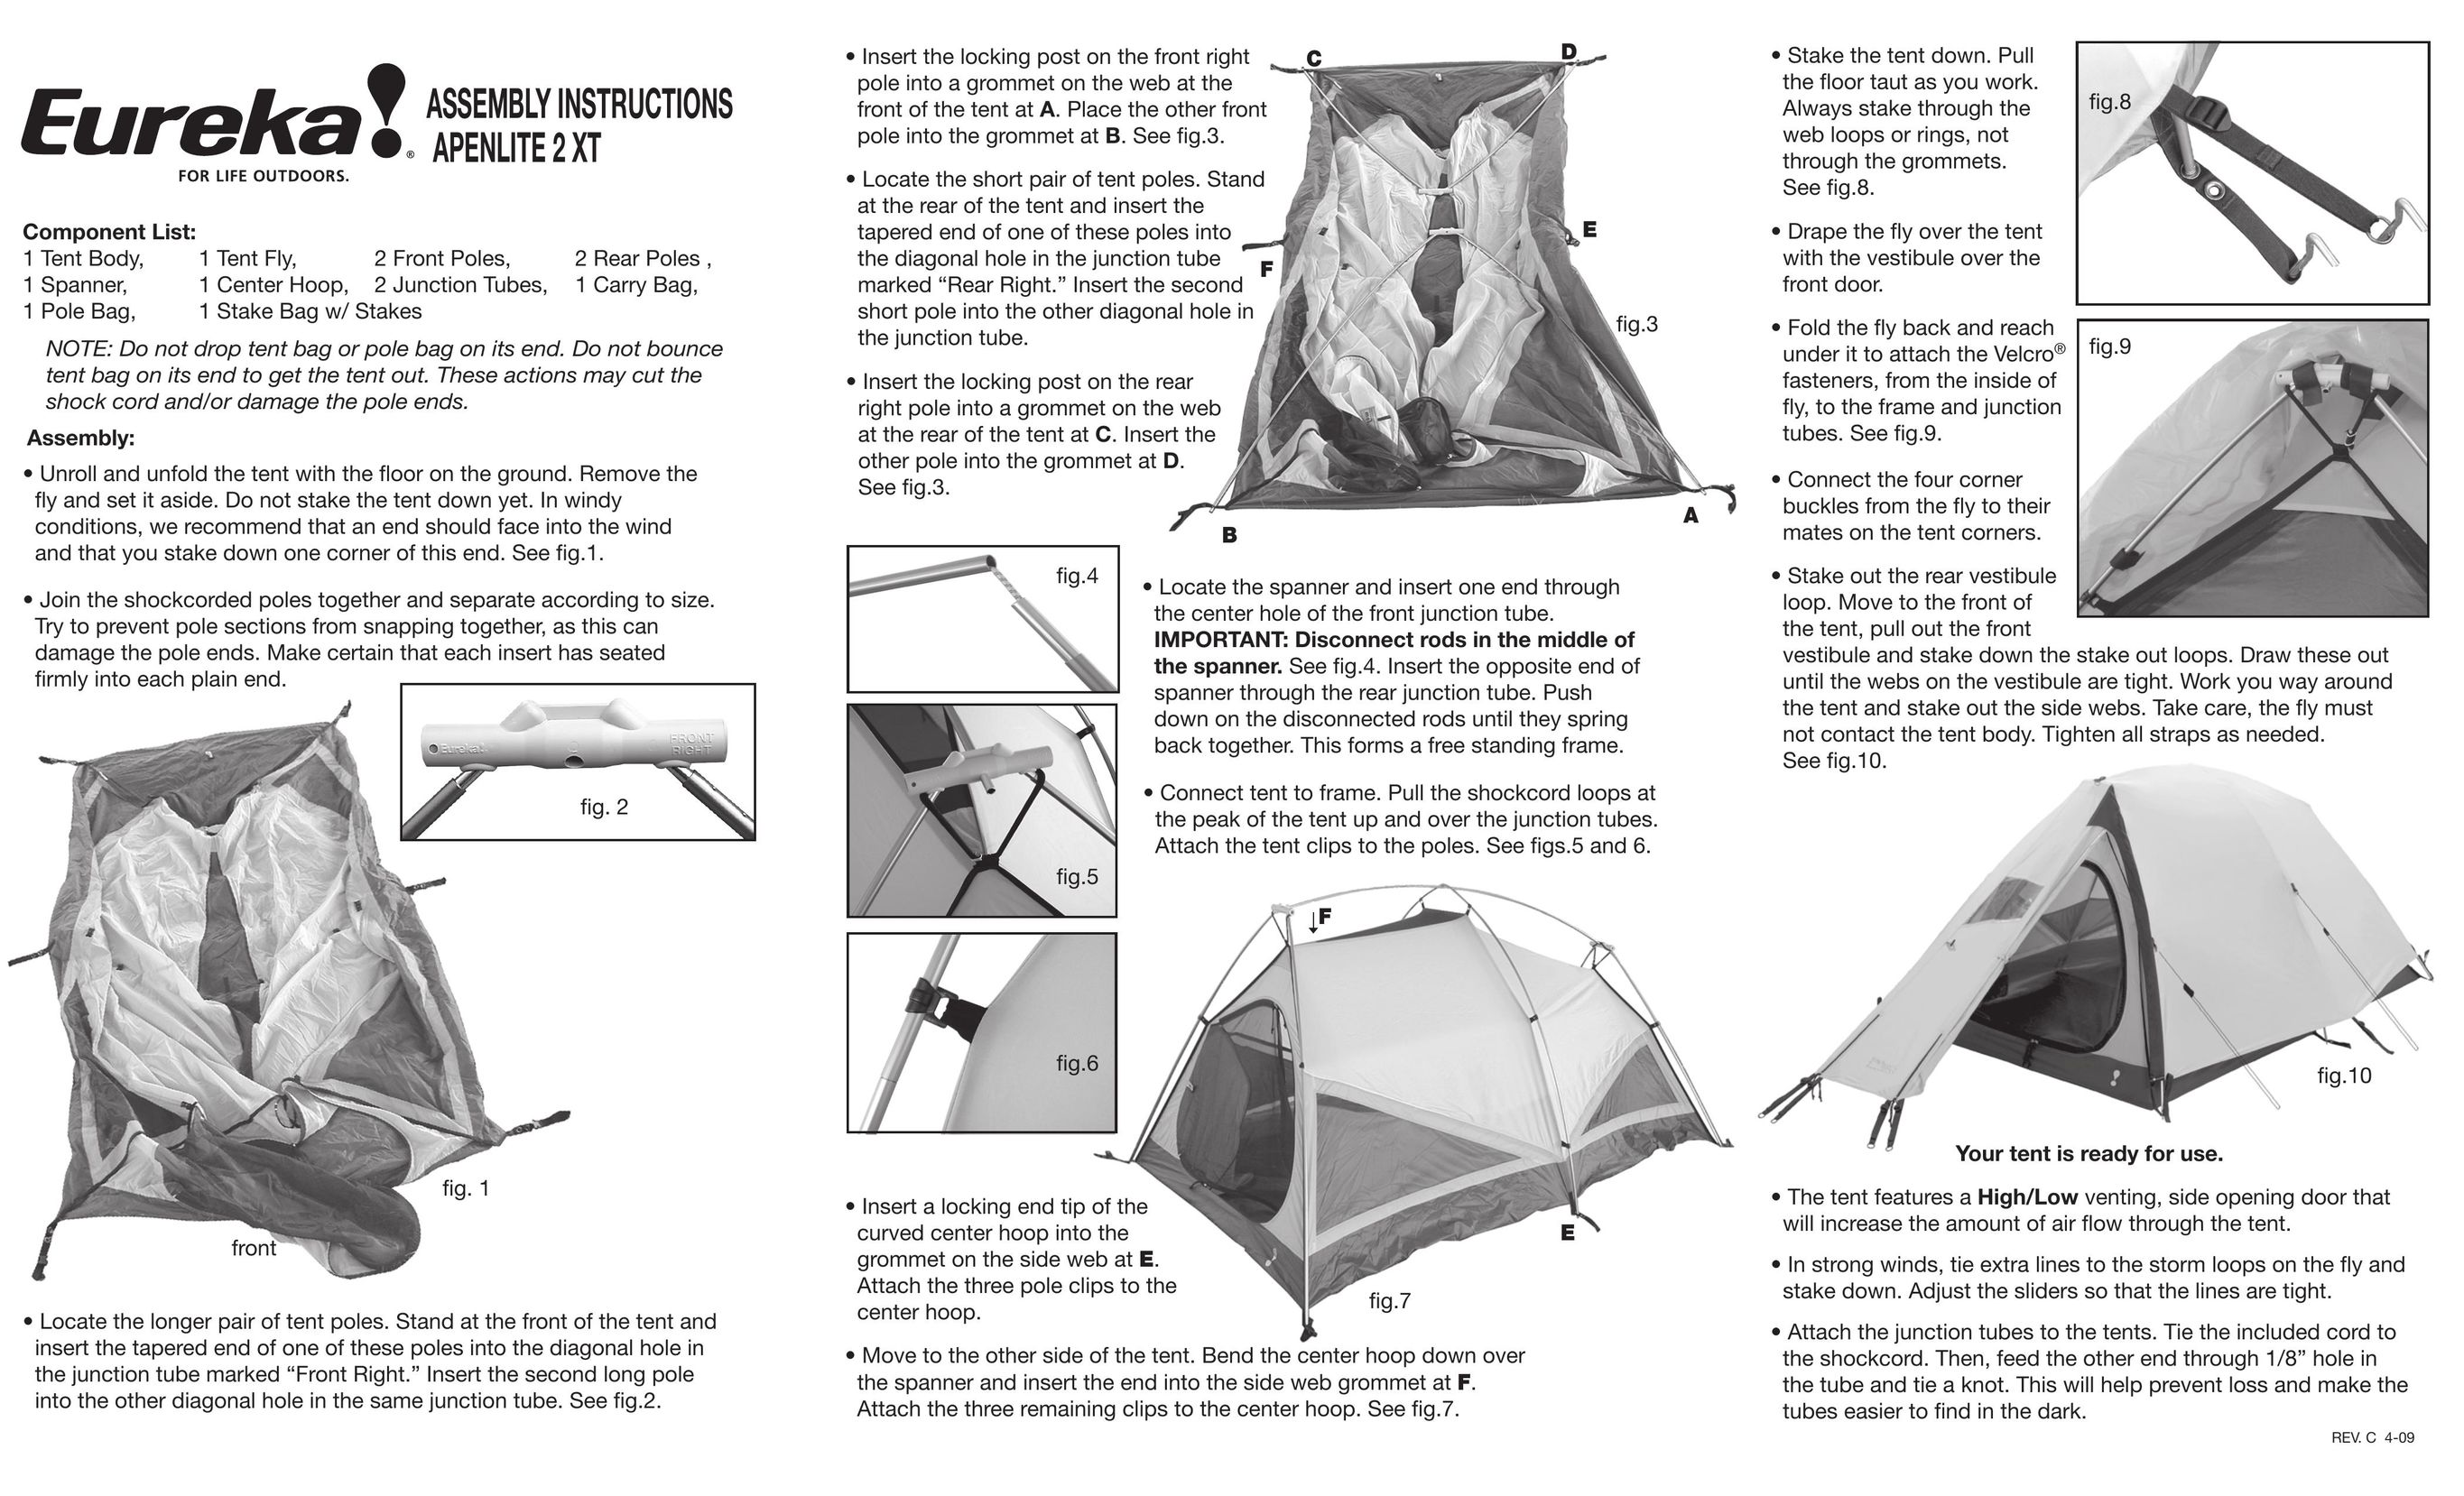 Eureka! Tents APENLITE 2 XT Tent User Manual